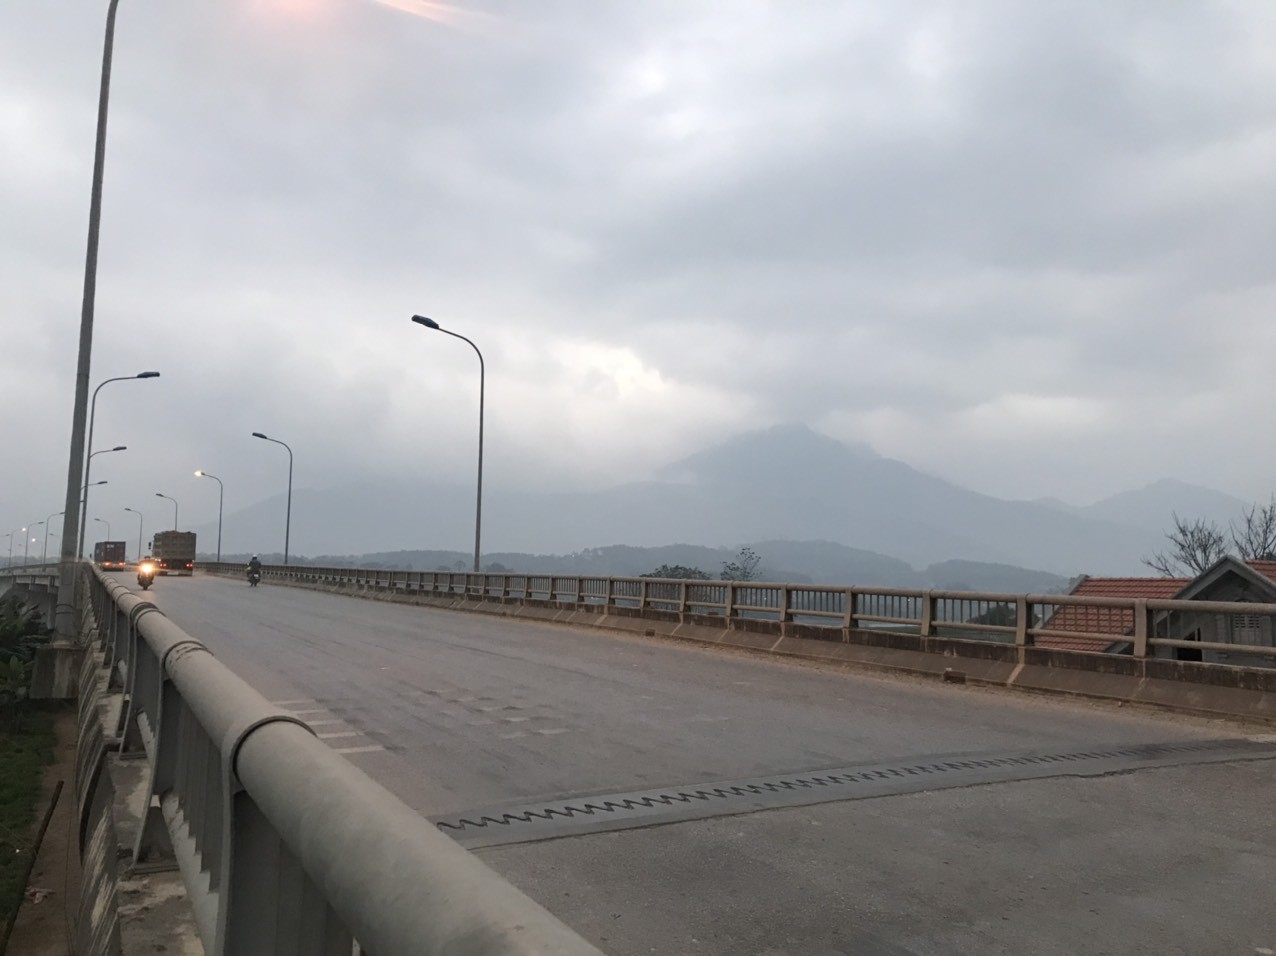 
Cầu Đồng Quang kết nối Ba Vì và Thanh Thủy, rút ngắn thời gian từ trung tâm Thủ đô Hà Nội đến Thanh Thủy
